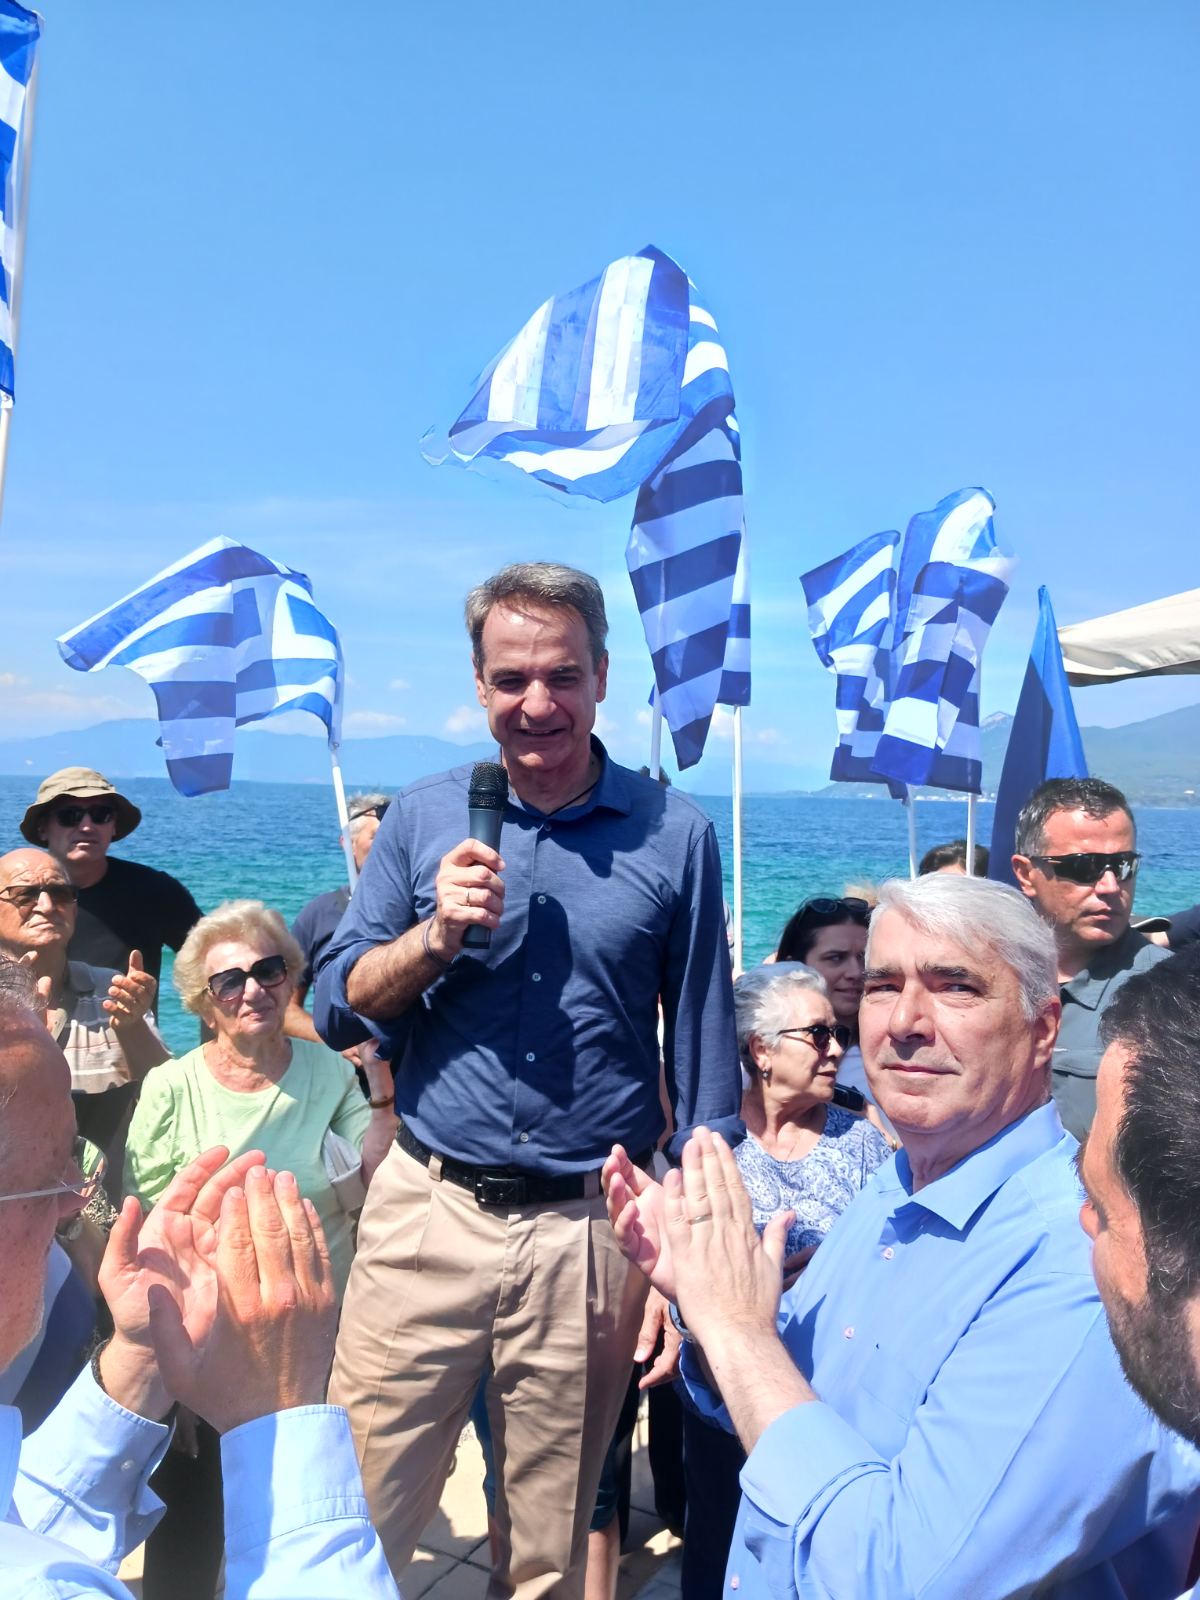 Θερμή υποδοχή του Κυριάκου Μητσοτάκη με ελληνικές σημαίες  στην Βόρεια Εύβοια viber image 2023 06 09 11 44 53 104